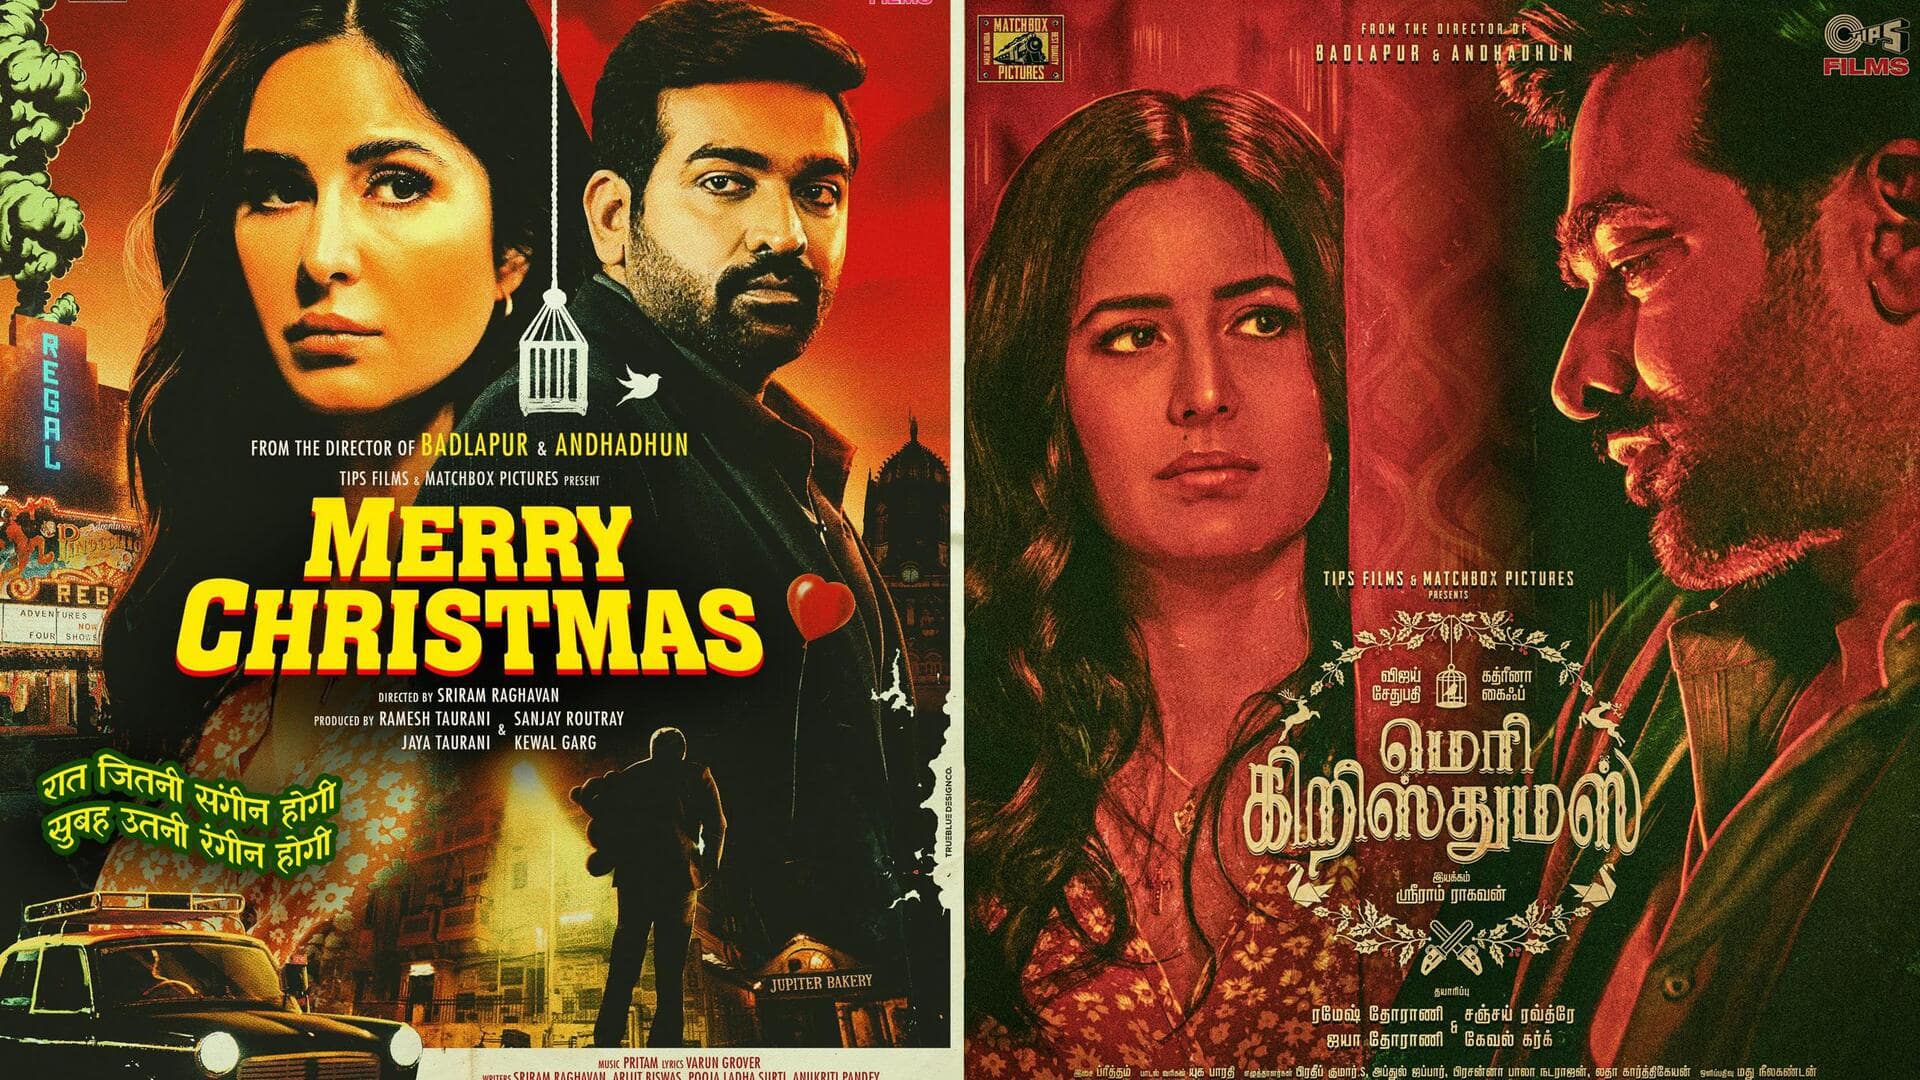 कैटरीना और विजय सेतुपति की फिल्म 'मैरी क्रिसमस' की रिलीज तारीख बदली, देखिए पोस्टर